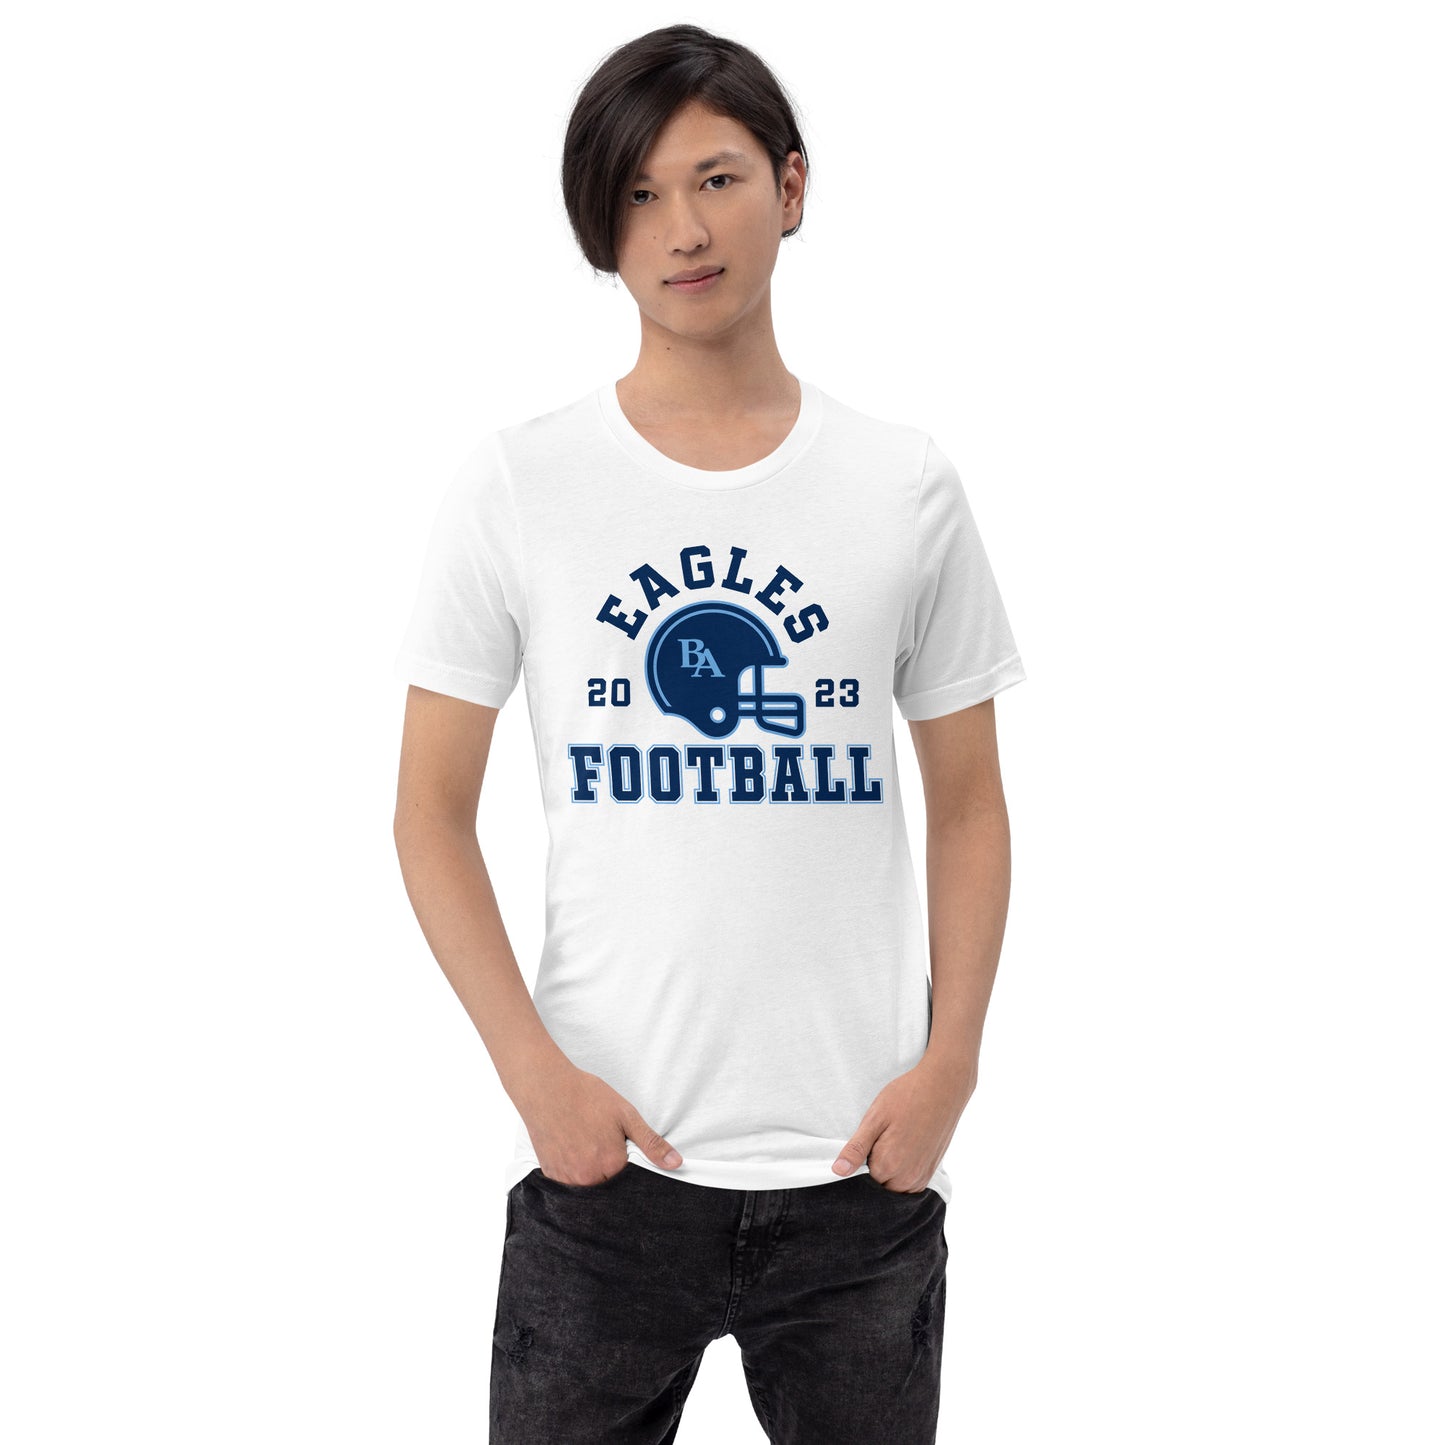 Football 2023 T-Shirt